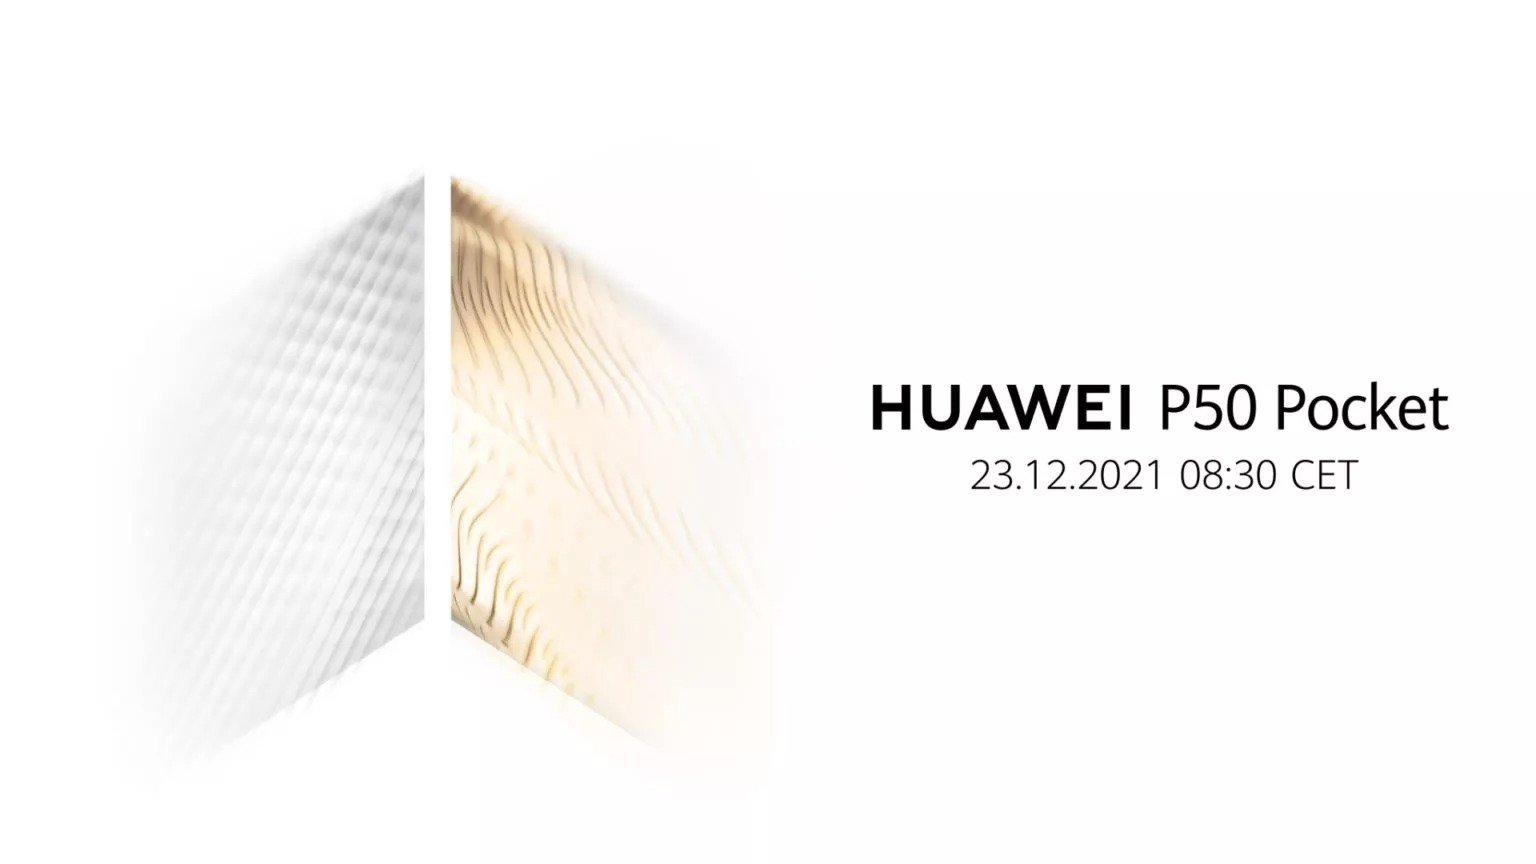 Huawei P50 Pocket resize 1536w 8